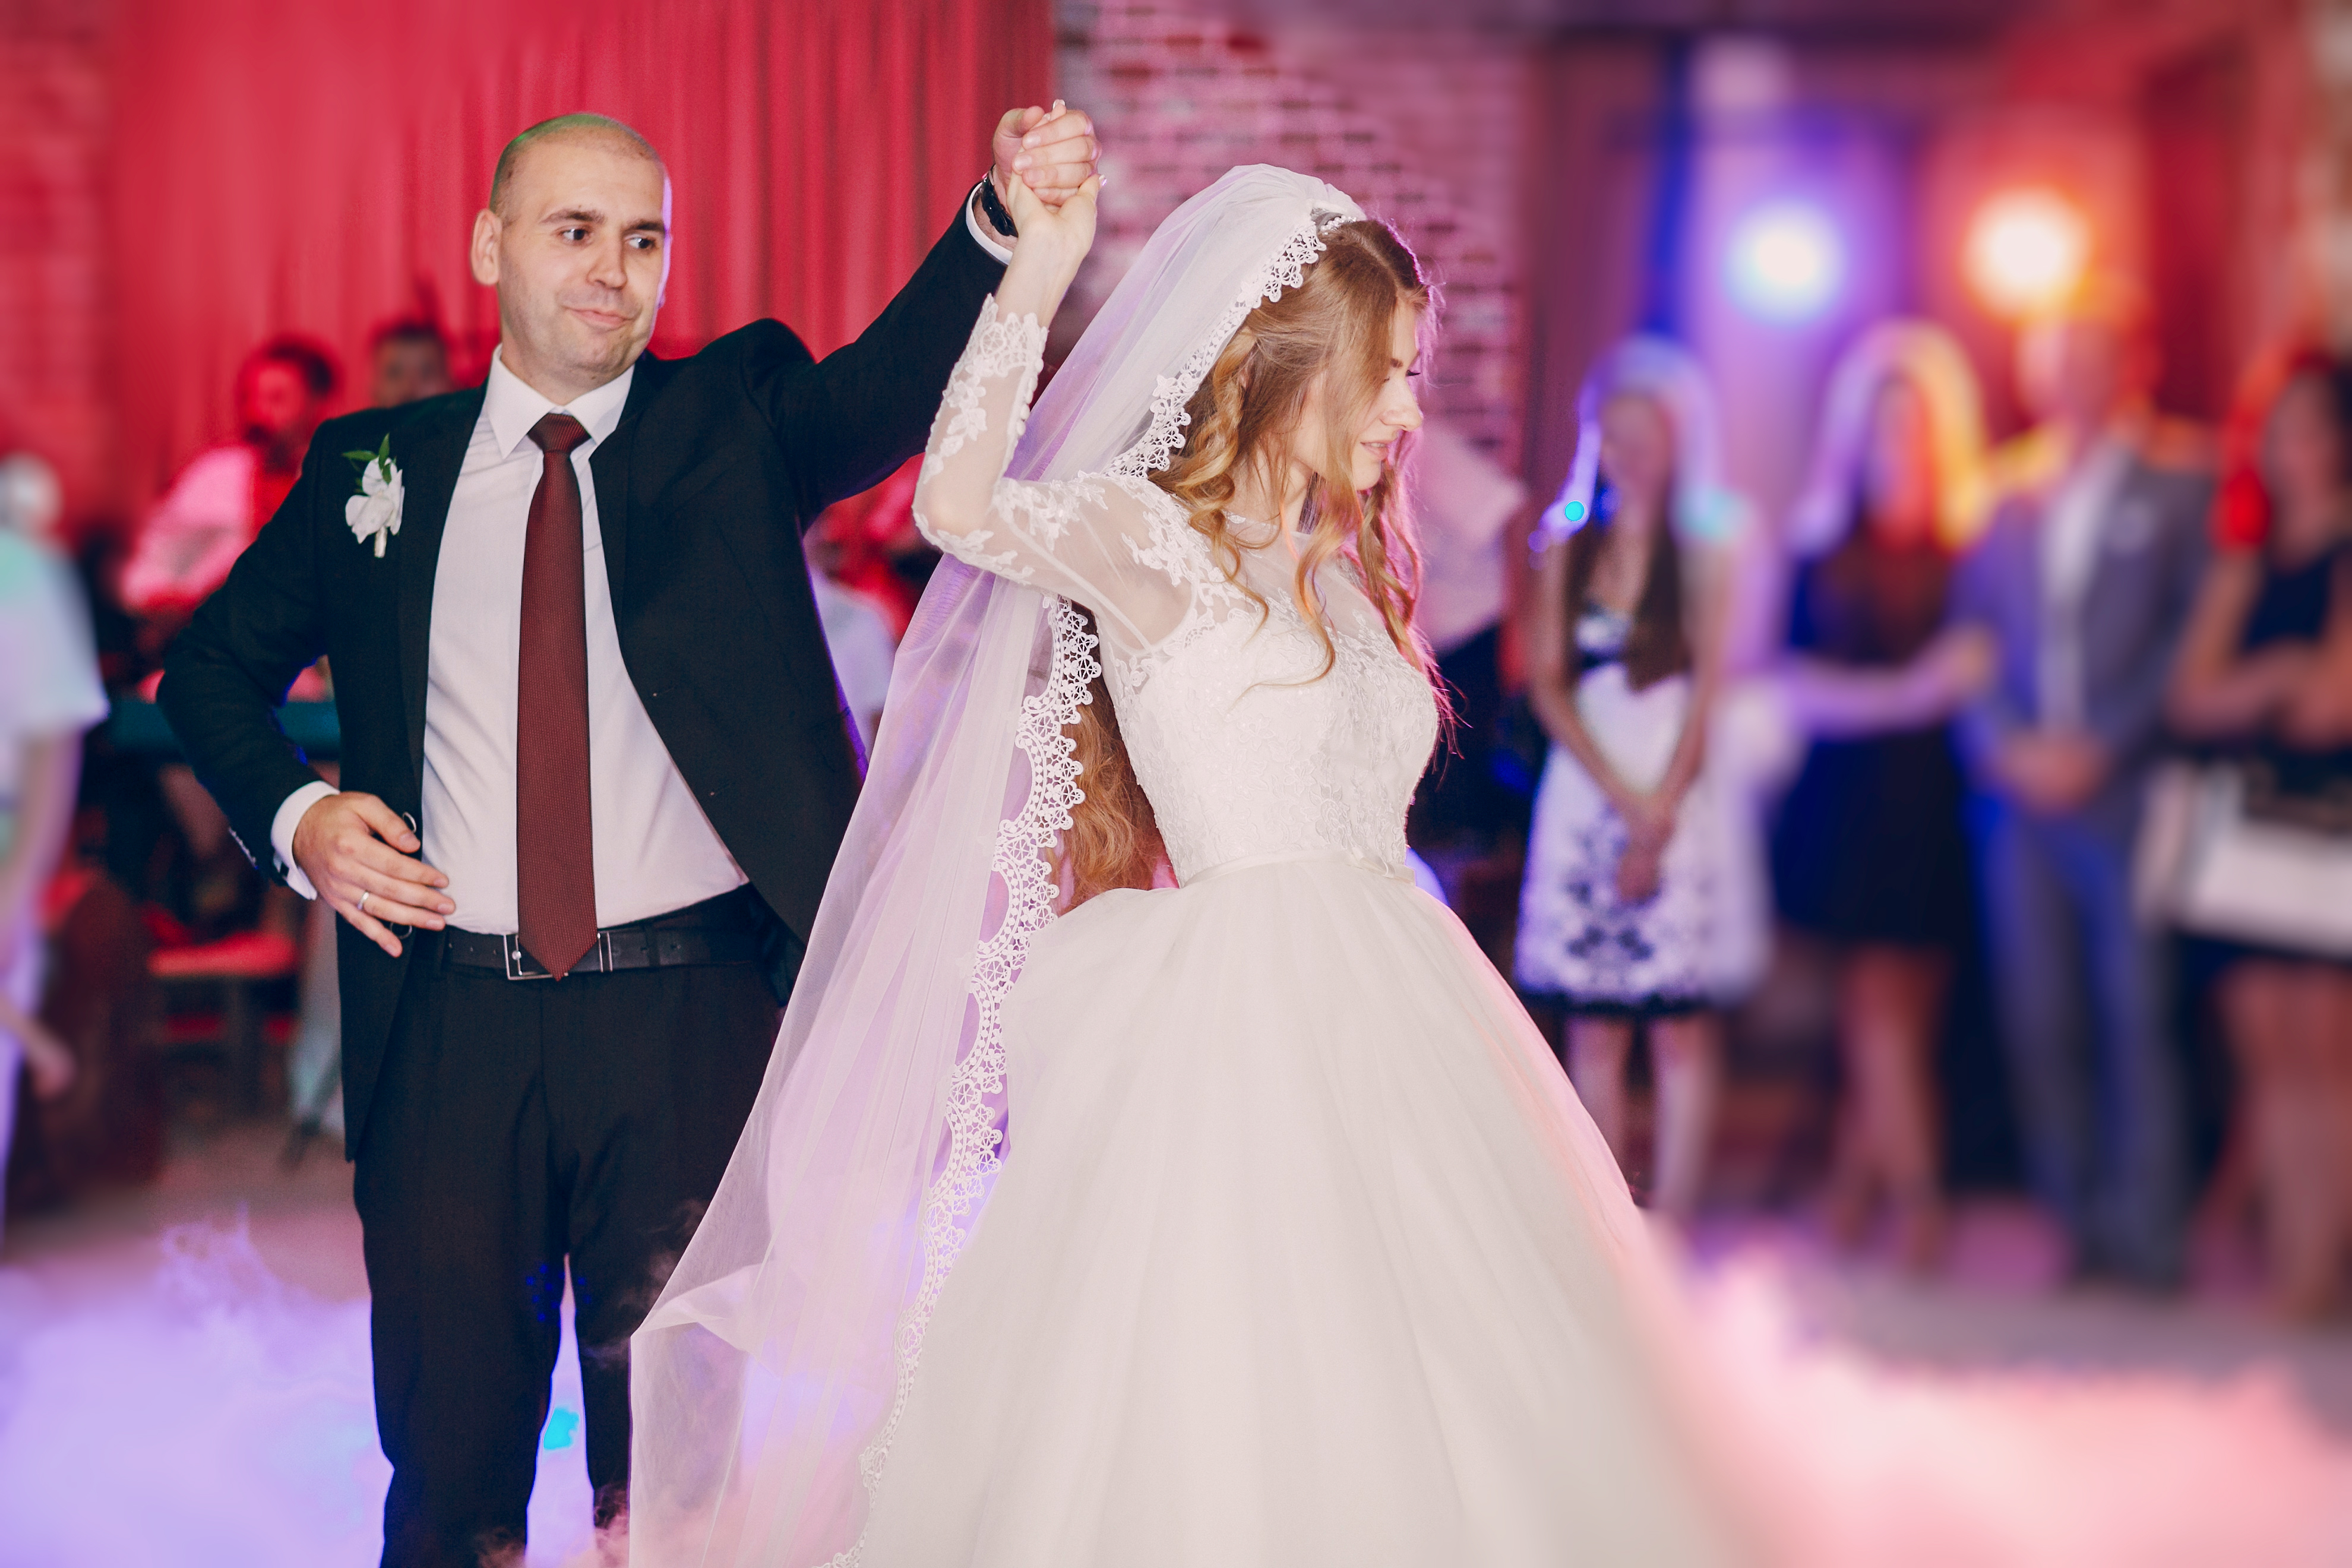 Braut und Bräutigam tanzen | Quelle: Freepik